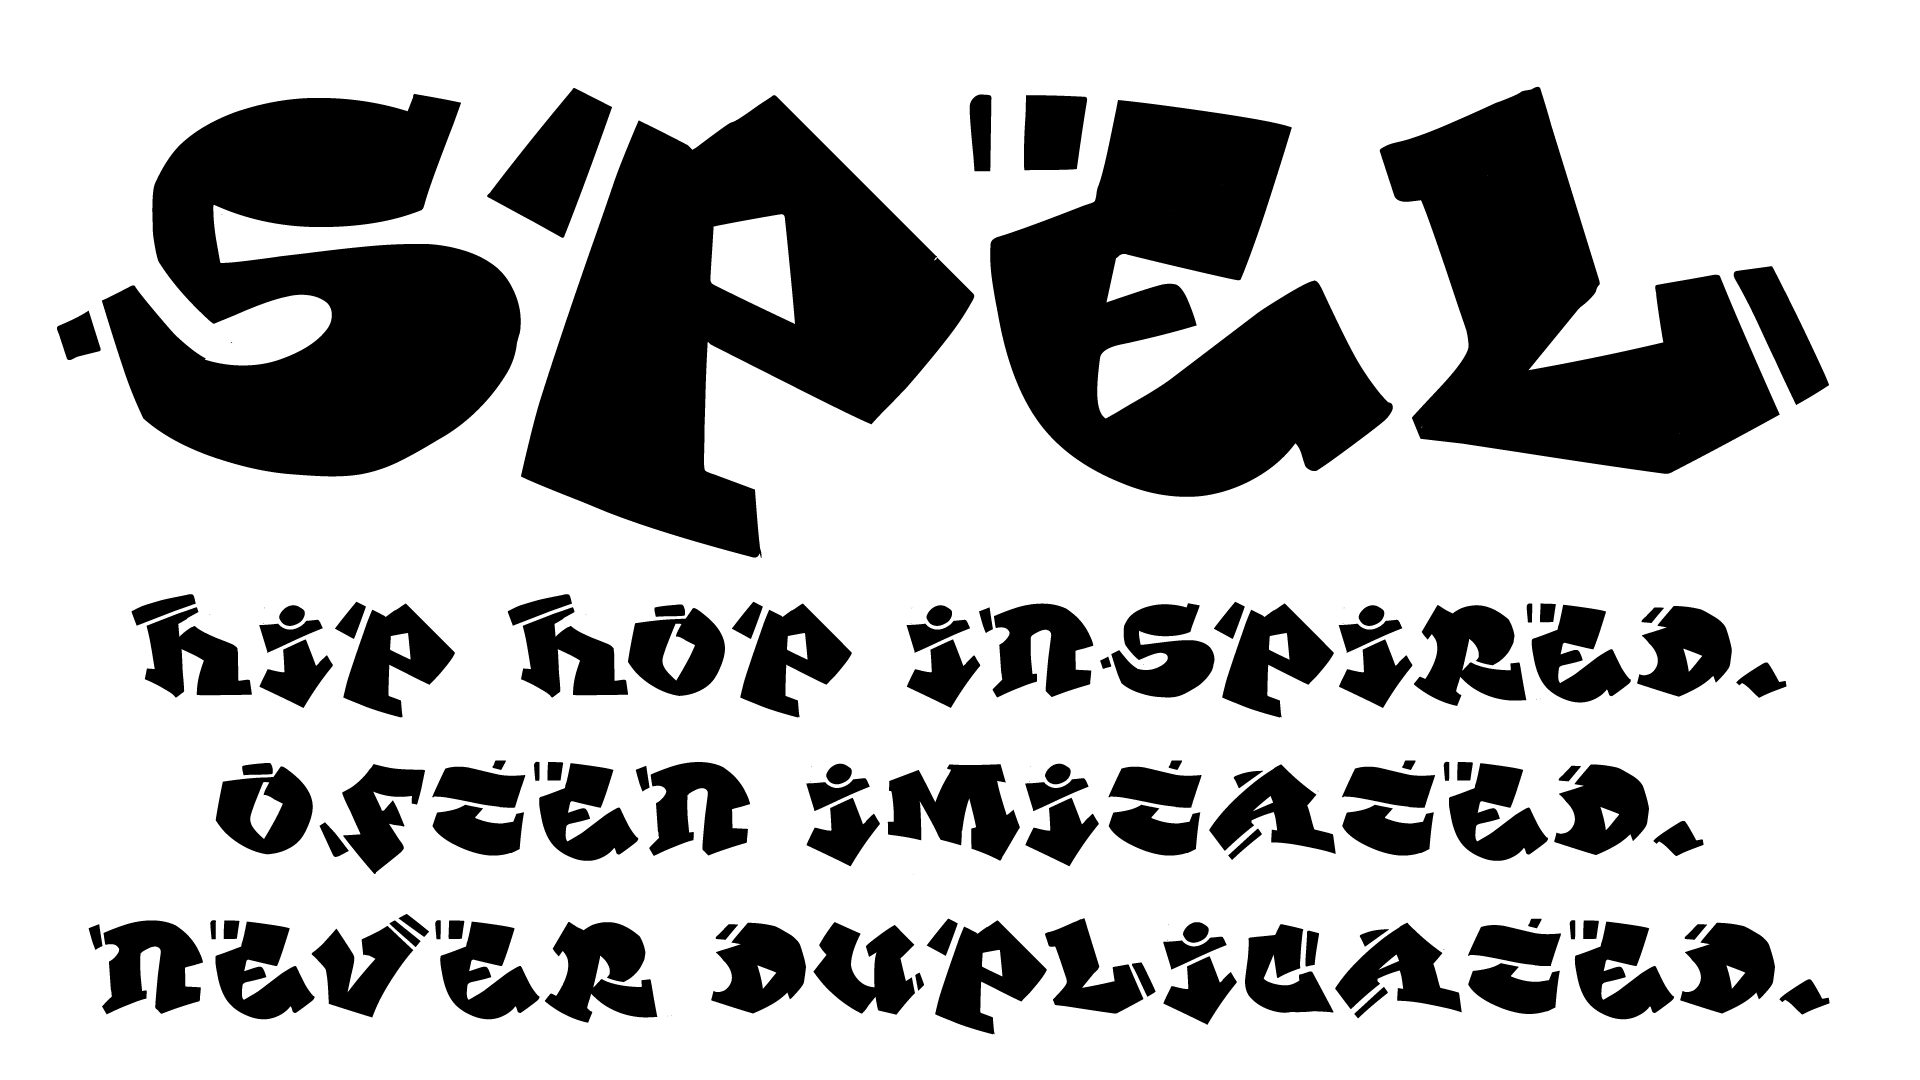 SPEL, a hip-hop inspired font I designed a while back